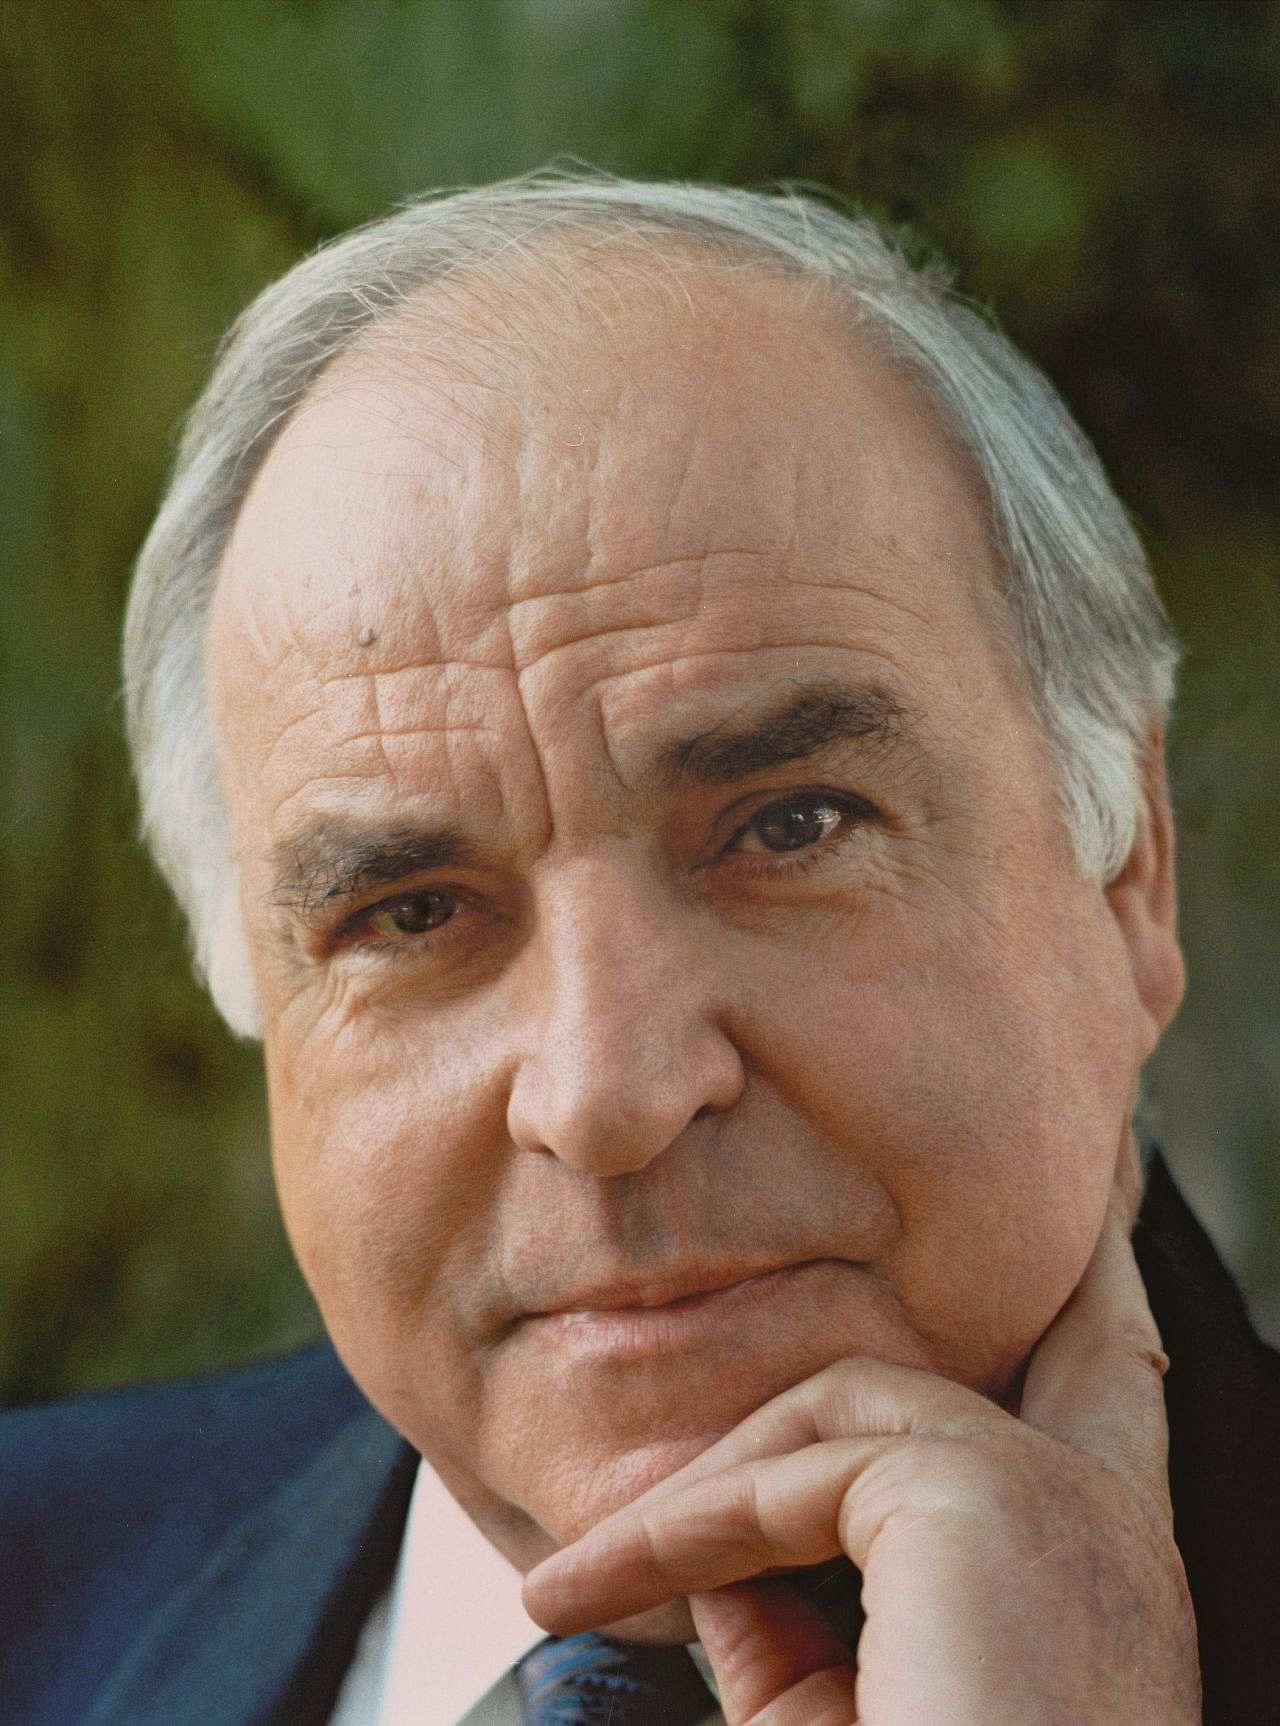 Porträtfoto von Bundeskanzler Helmut Kohl, 1996.